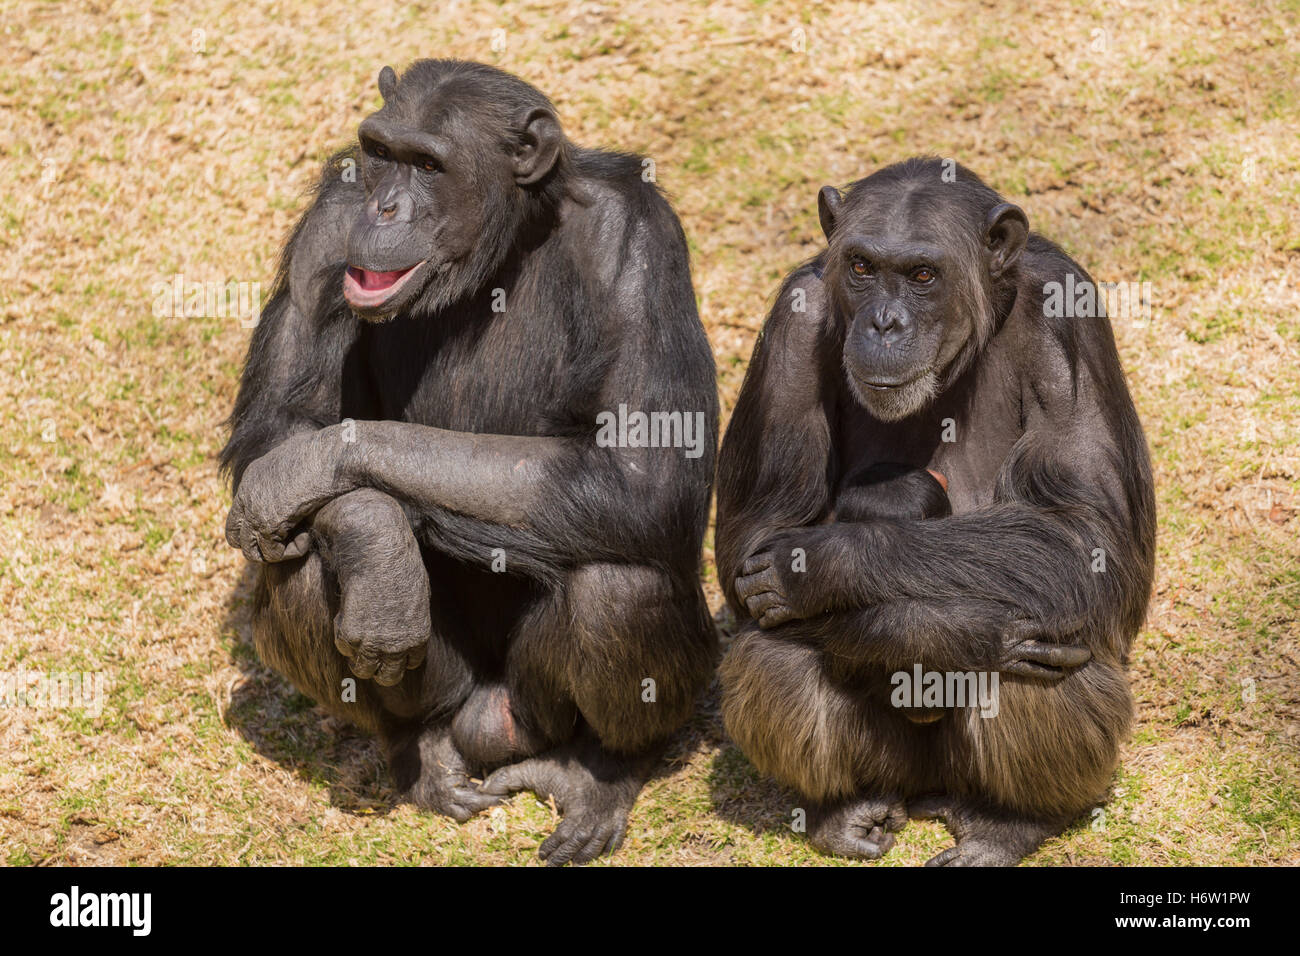 Africa animale wildlife safari animale selvaggio di mammifero monkey nero jetblack swarthy nero profondo della fauna selvatica natura scimpanzé ape chimp Foto Stock